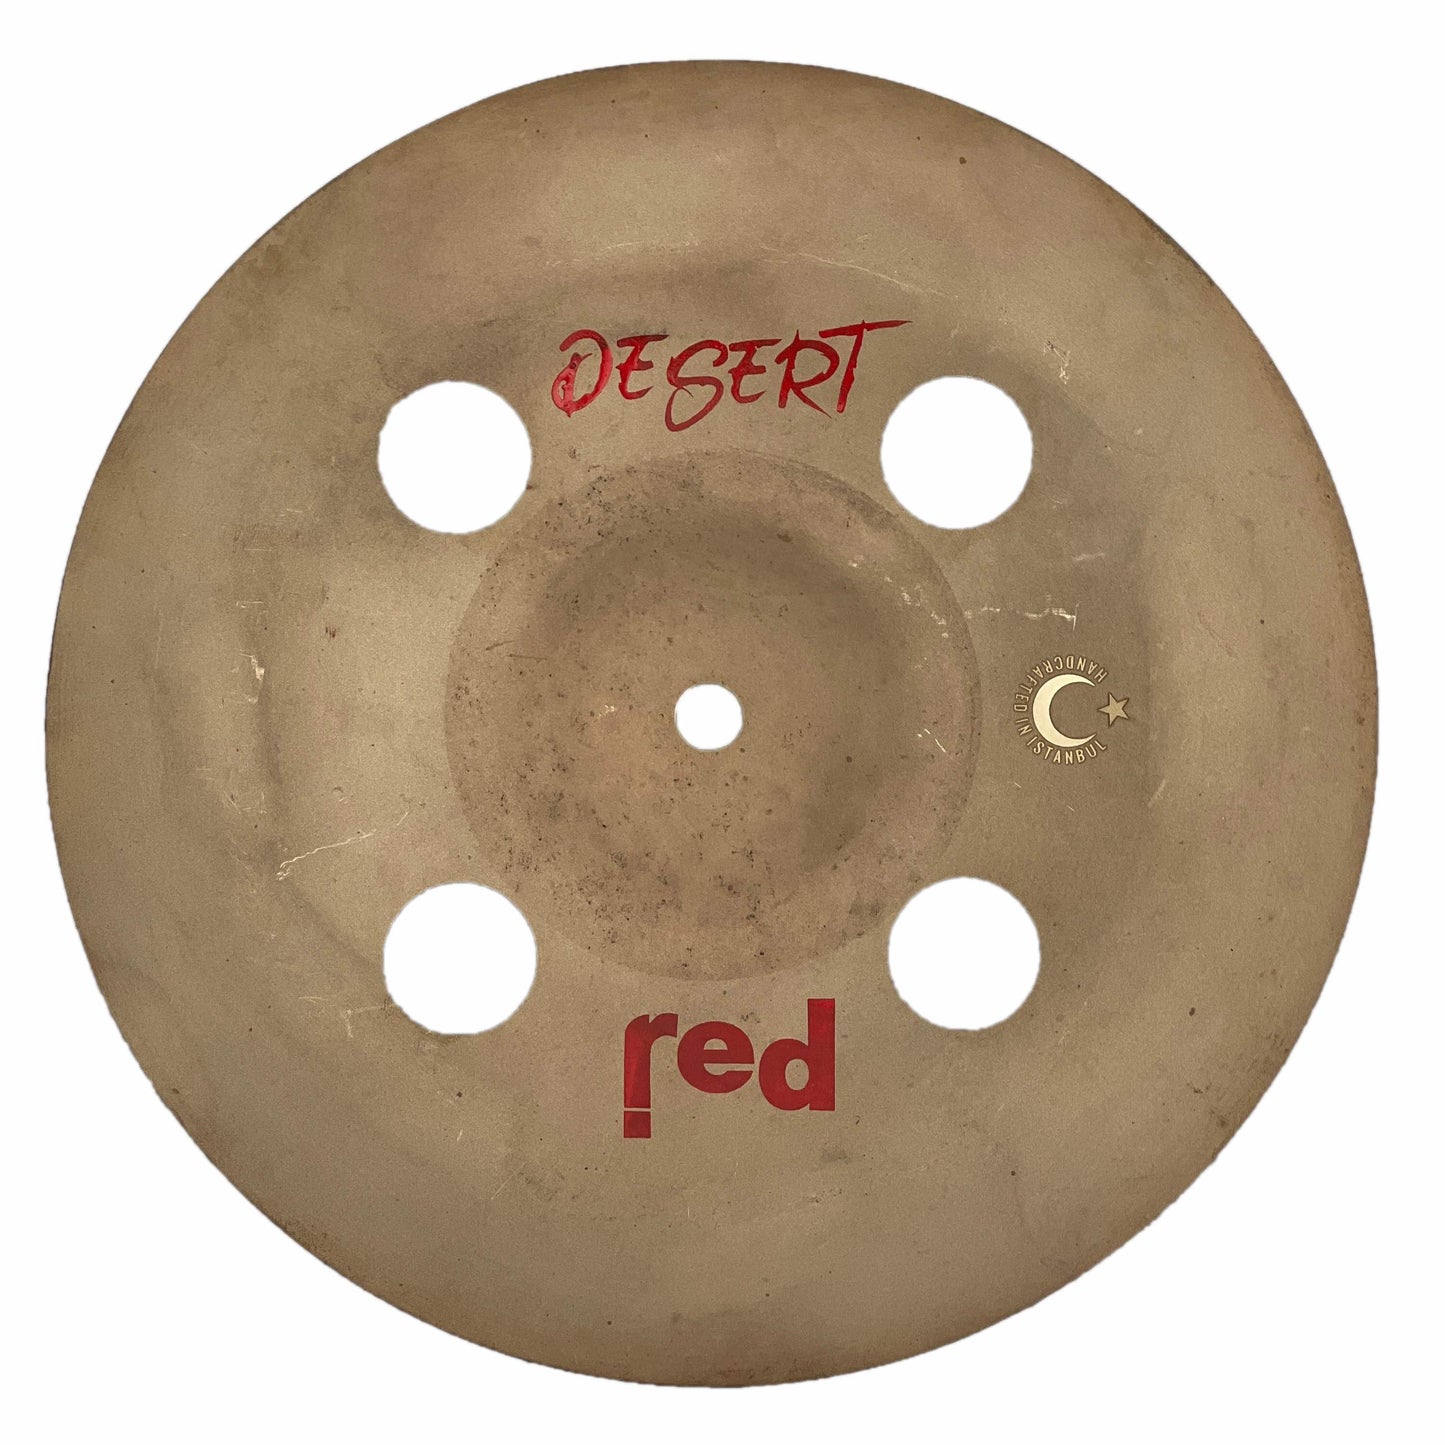 Desert Series fx China Cymbal